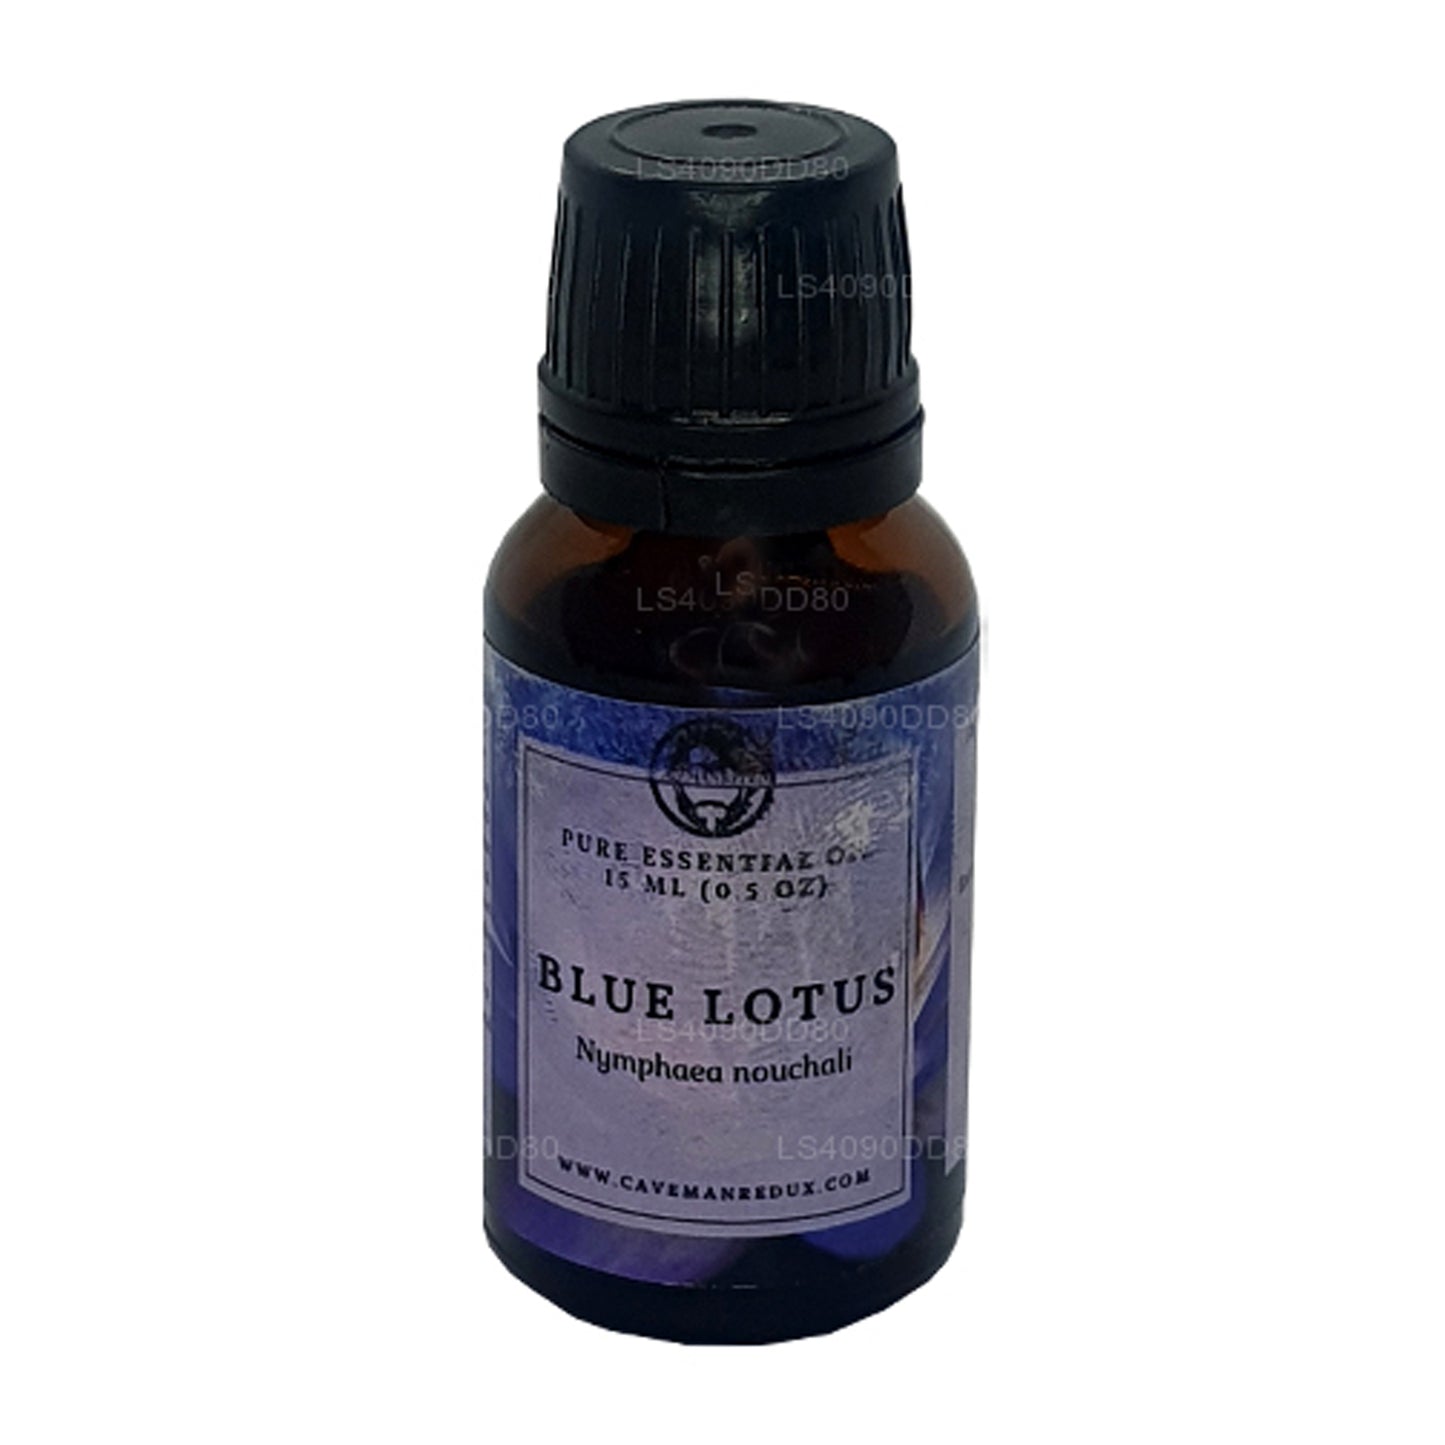 Lakpura Blue Lotus Essential Oil (15ml)